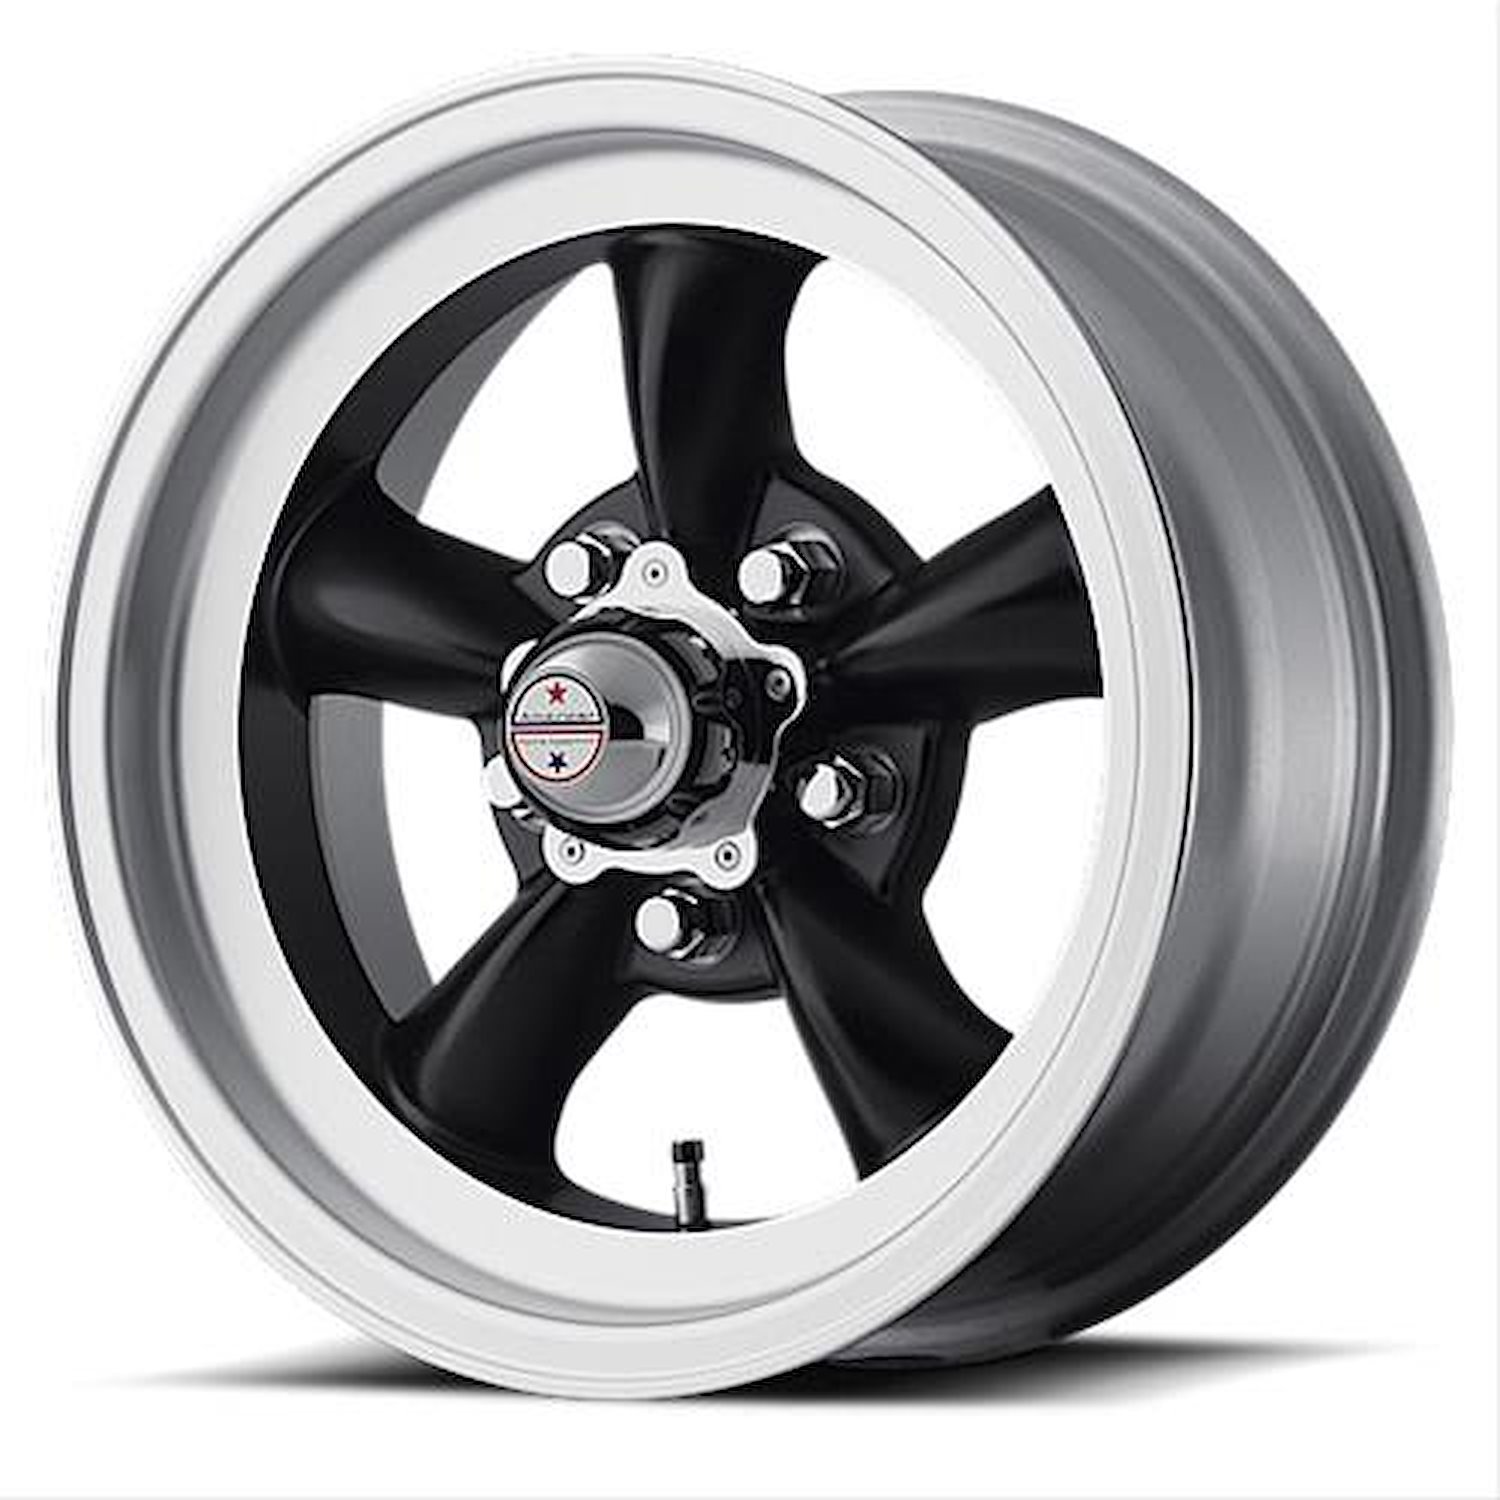 VN105D Series Torq-Thrust D Wheel Size: 14" x 6"